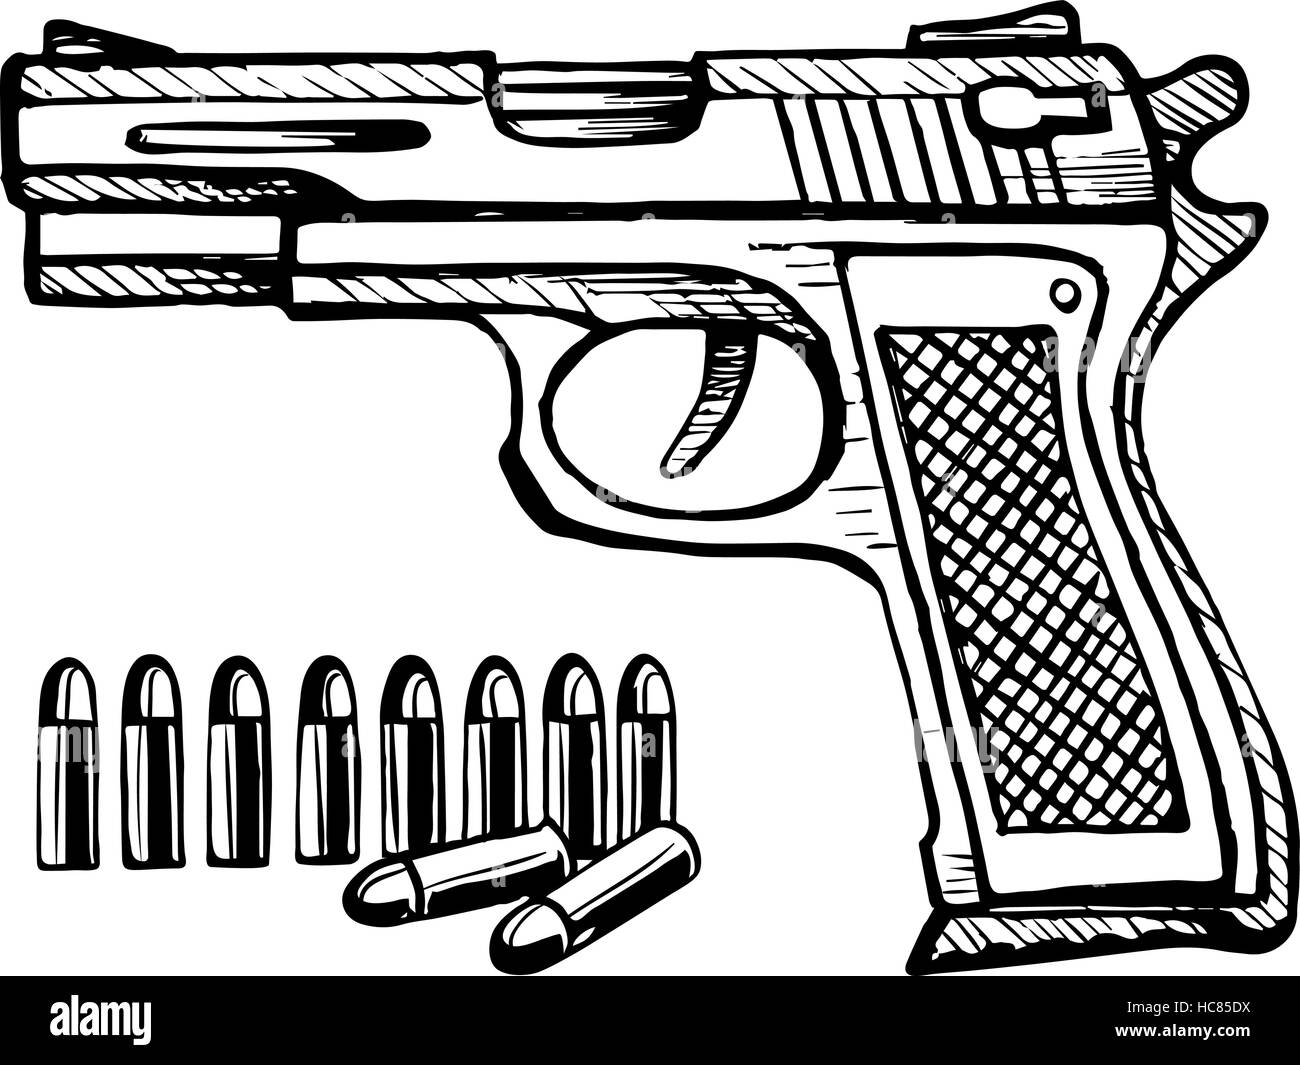 Doodle-Stil Handfeuerwaffe Skizze im Vektor-Format Aufzählungszeichen Stock Vektor